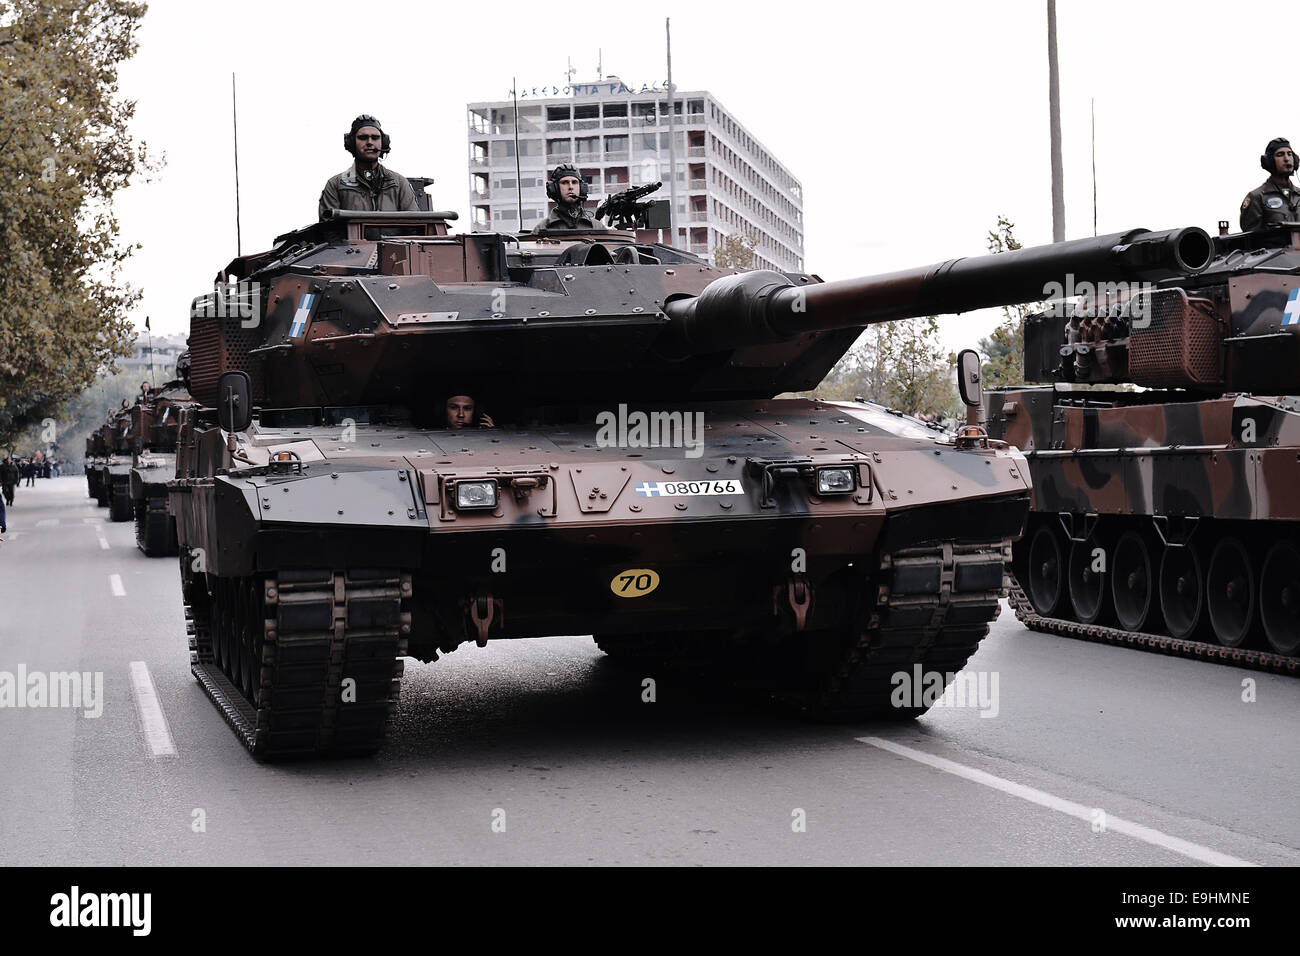 Salonicco, Grecia. 28 ottobre, 2014. Un Leopard 2 HEL serbatoio durante la parata militare che si è svolta a Salonicco durante le celebrazioni del 28 ottobre anniversario, la data in cui la Grecia è entrata nella II Guerra Mondiale nel 1940. Credito: Giannis Papanikos/Alamy Live News Foto Stock